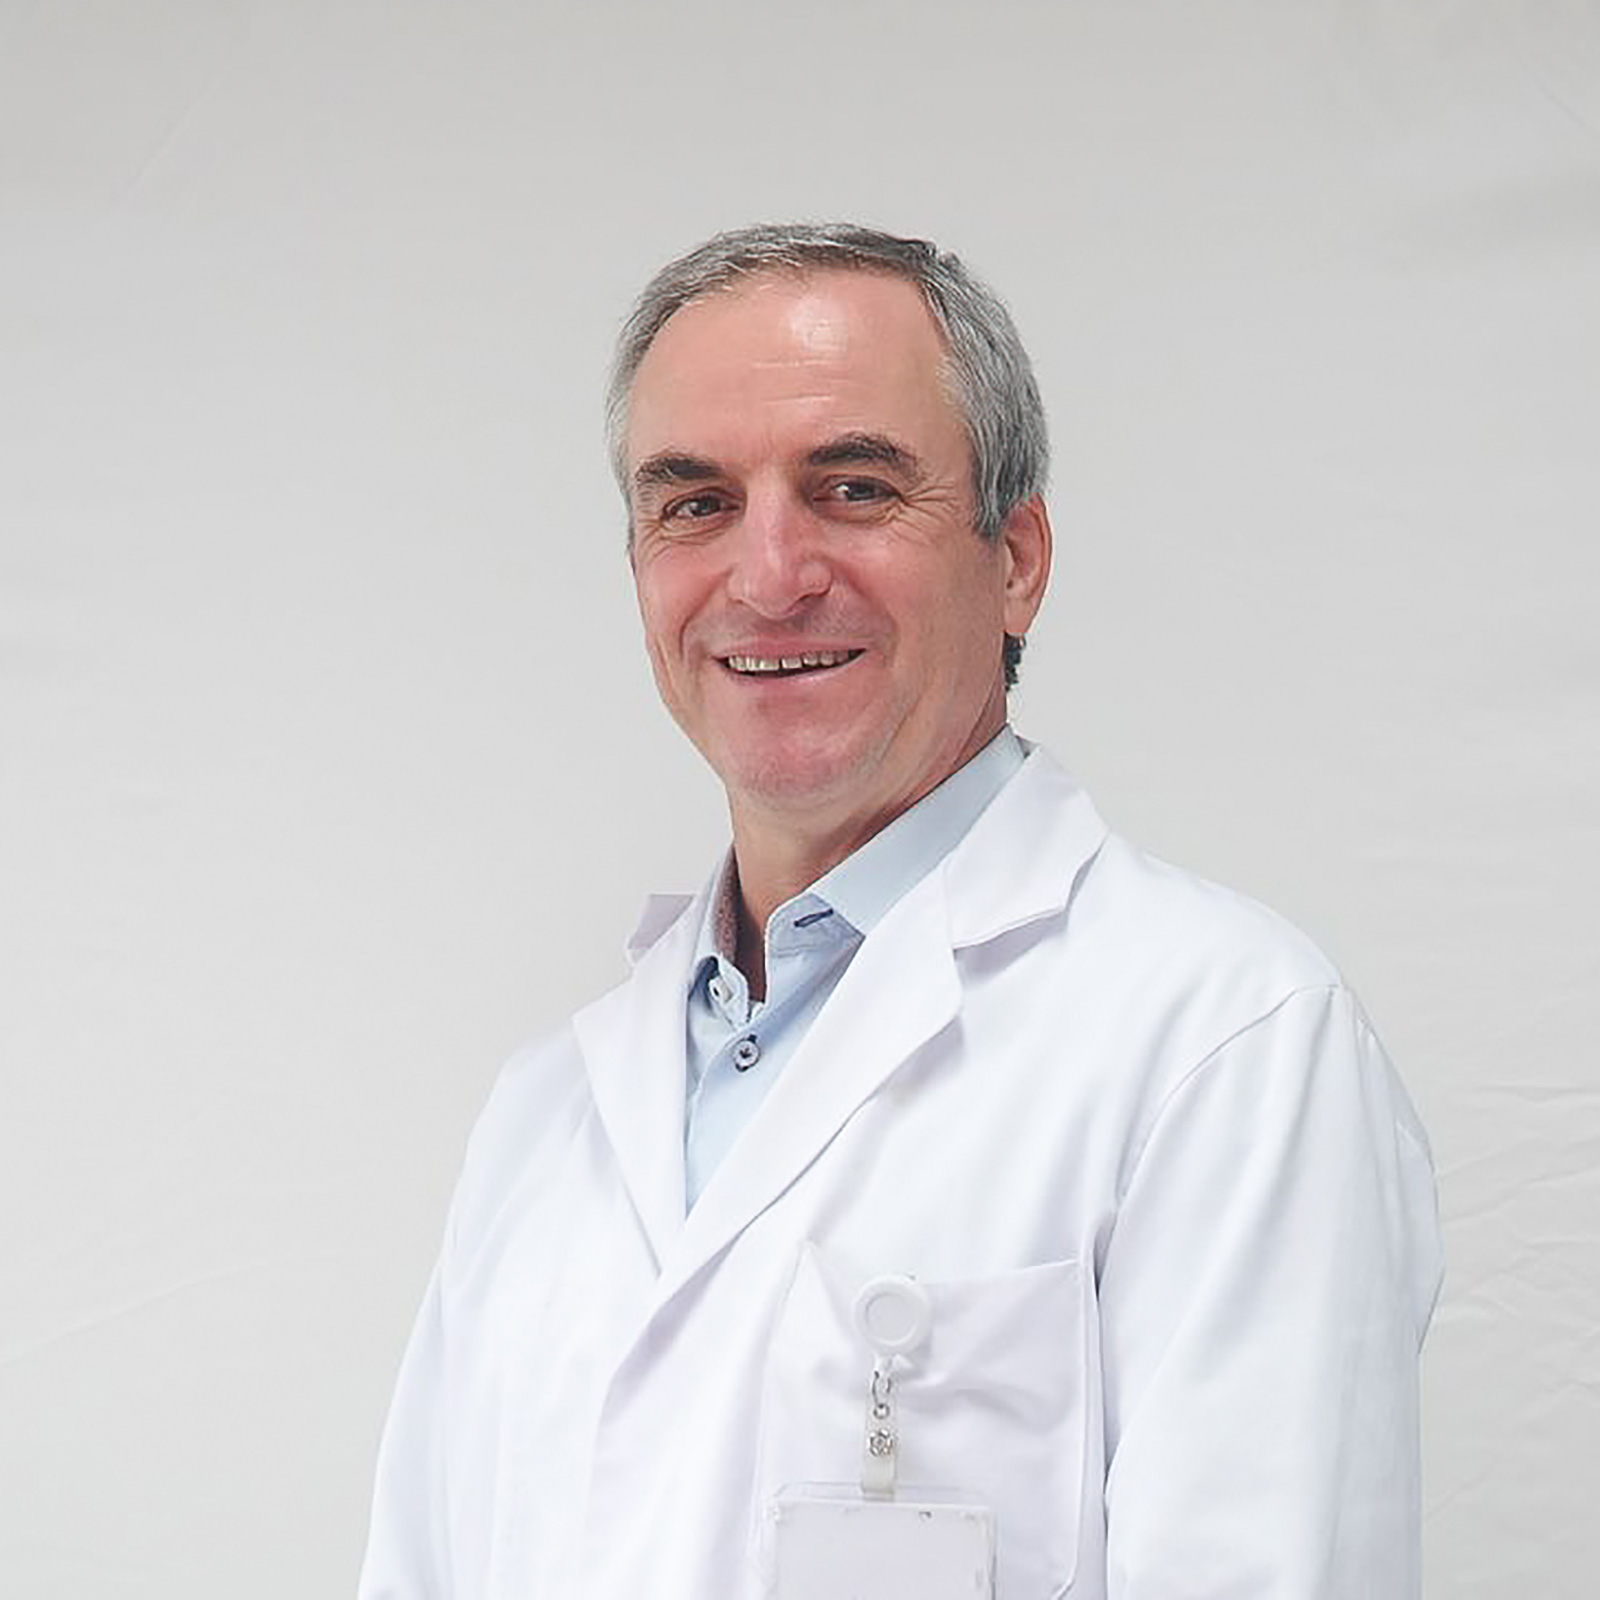 Dr. Guy Sallet